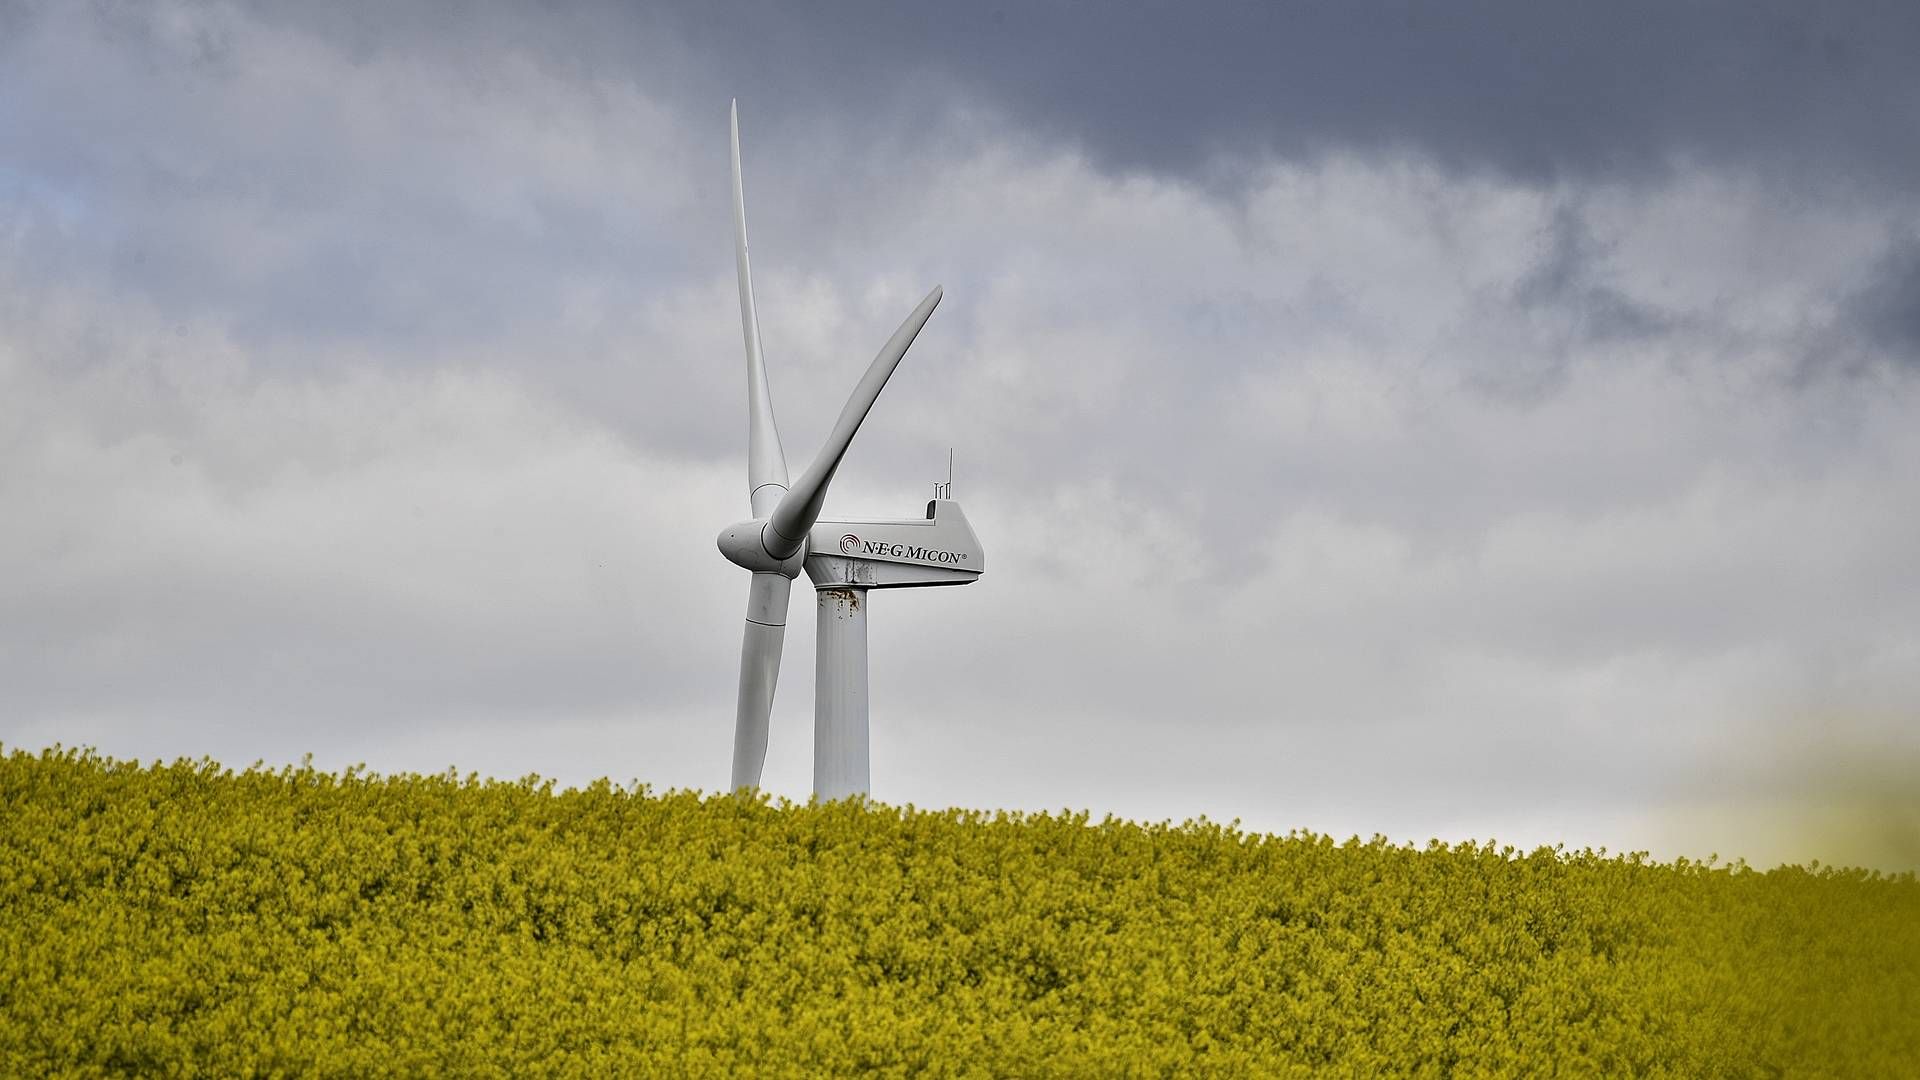 Danskerne vil gerne have flere vindmøller, viser ny undersøgelse. | Foto: Ernst van Norde